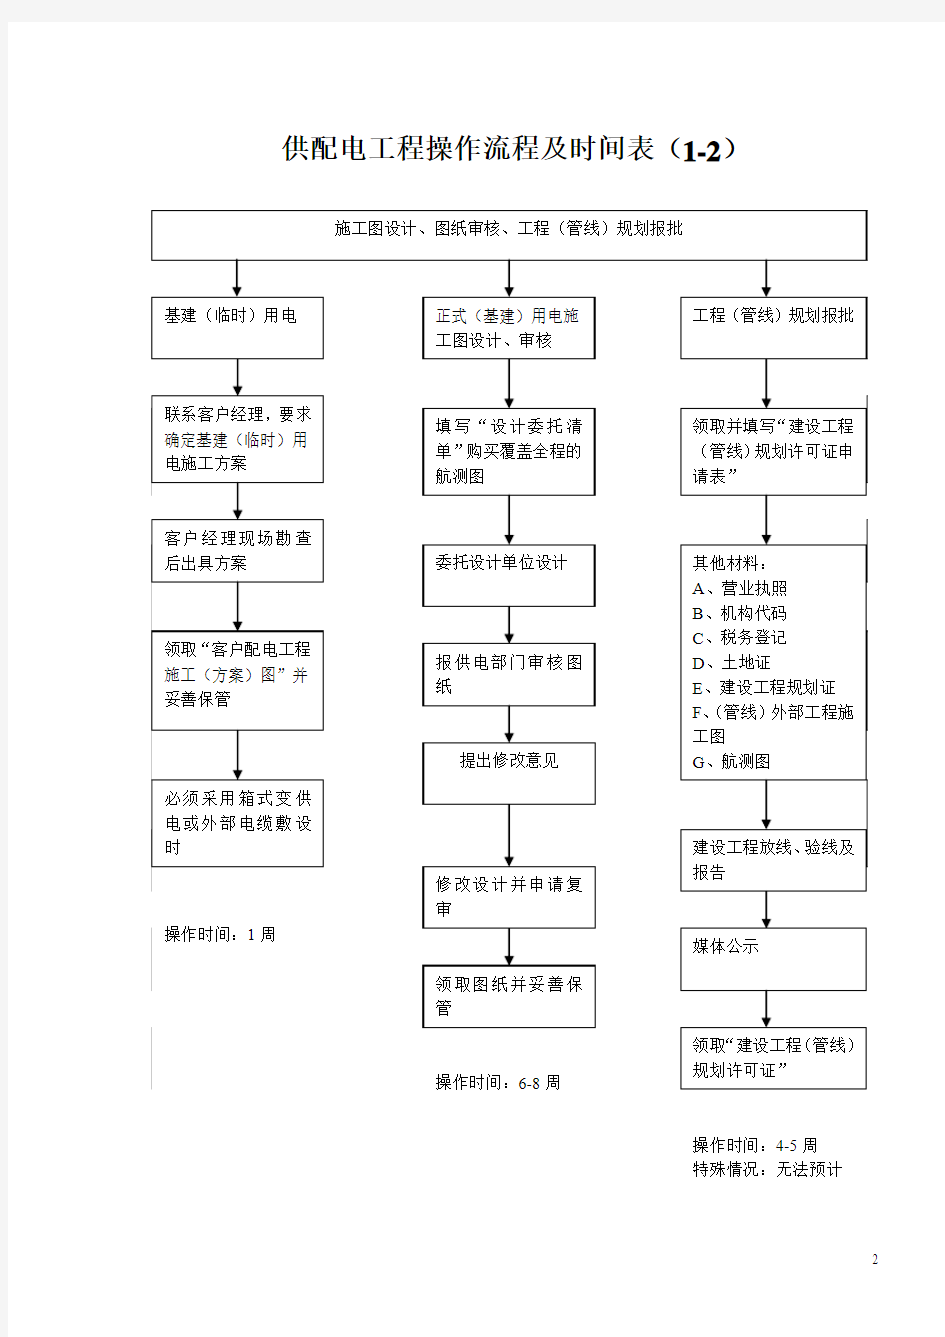 河南省供电公司供配电工程流程规范(最新版)